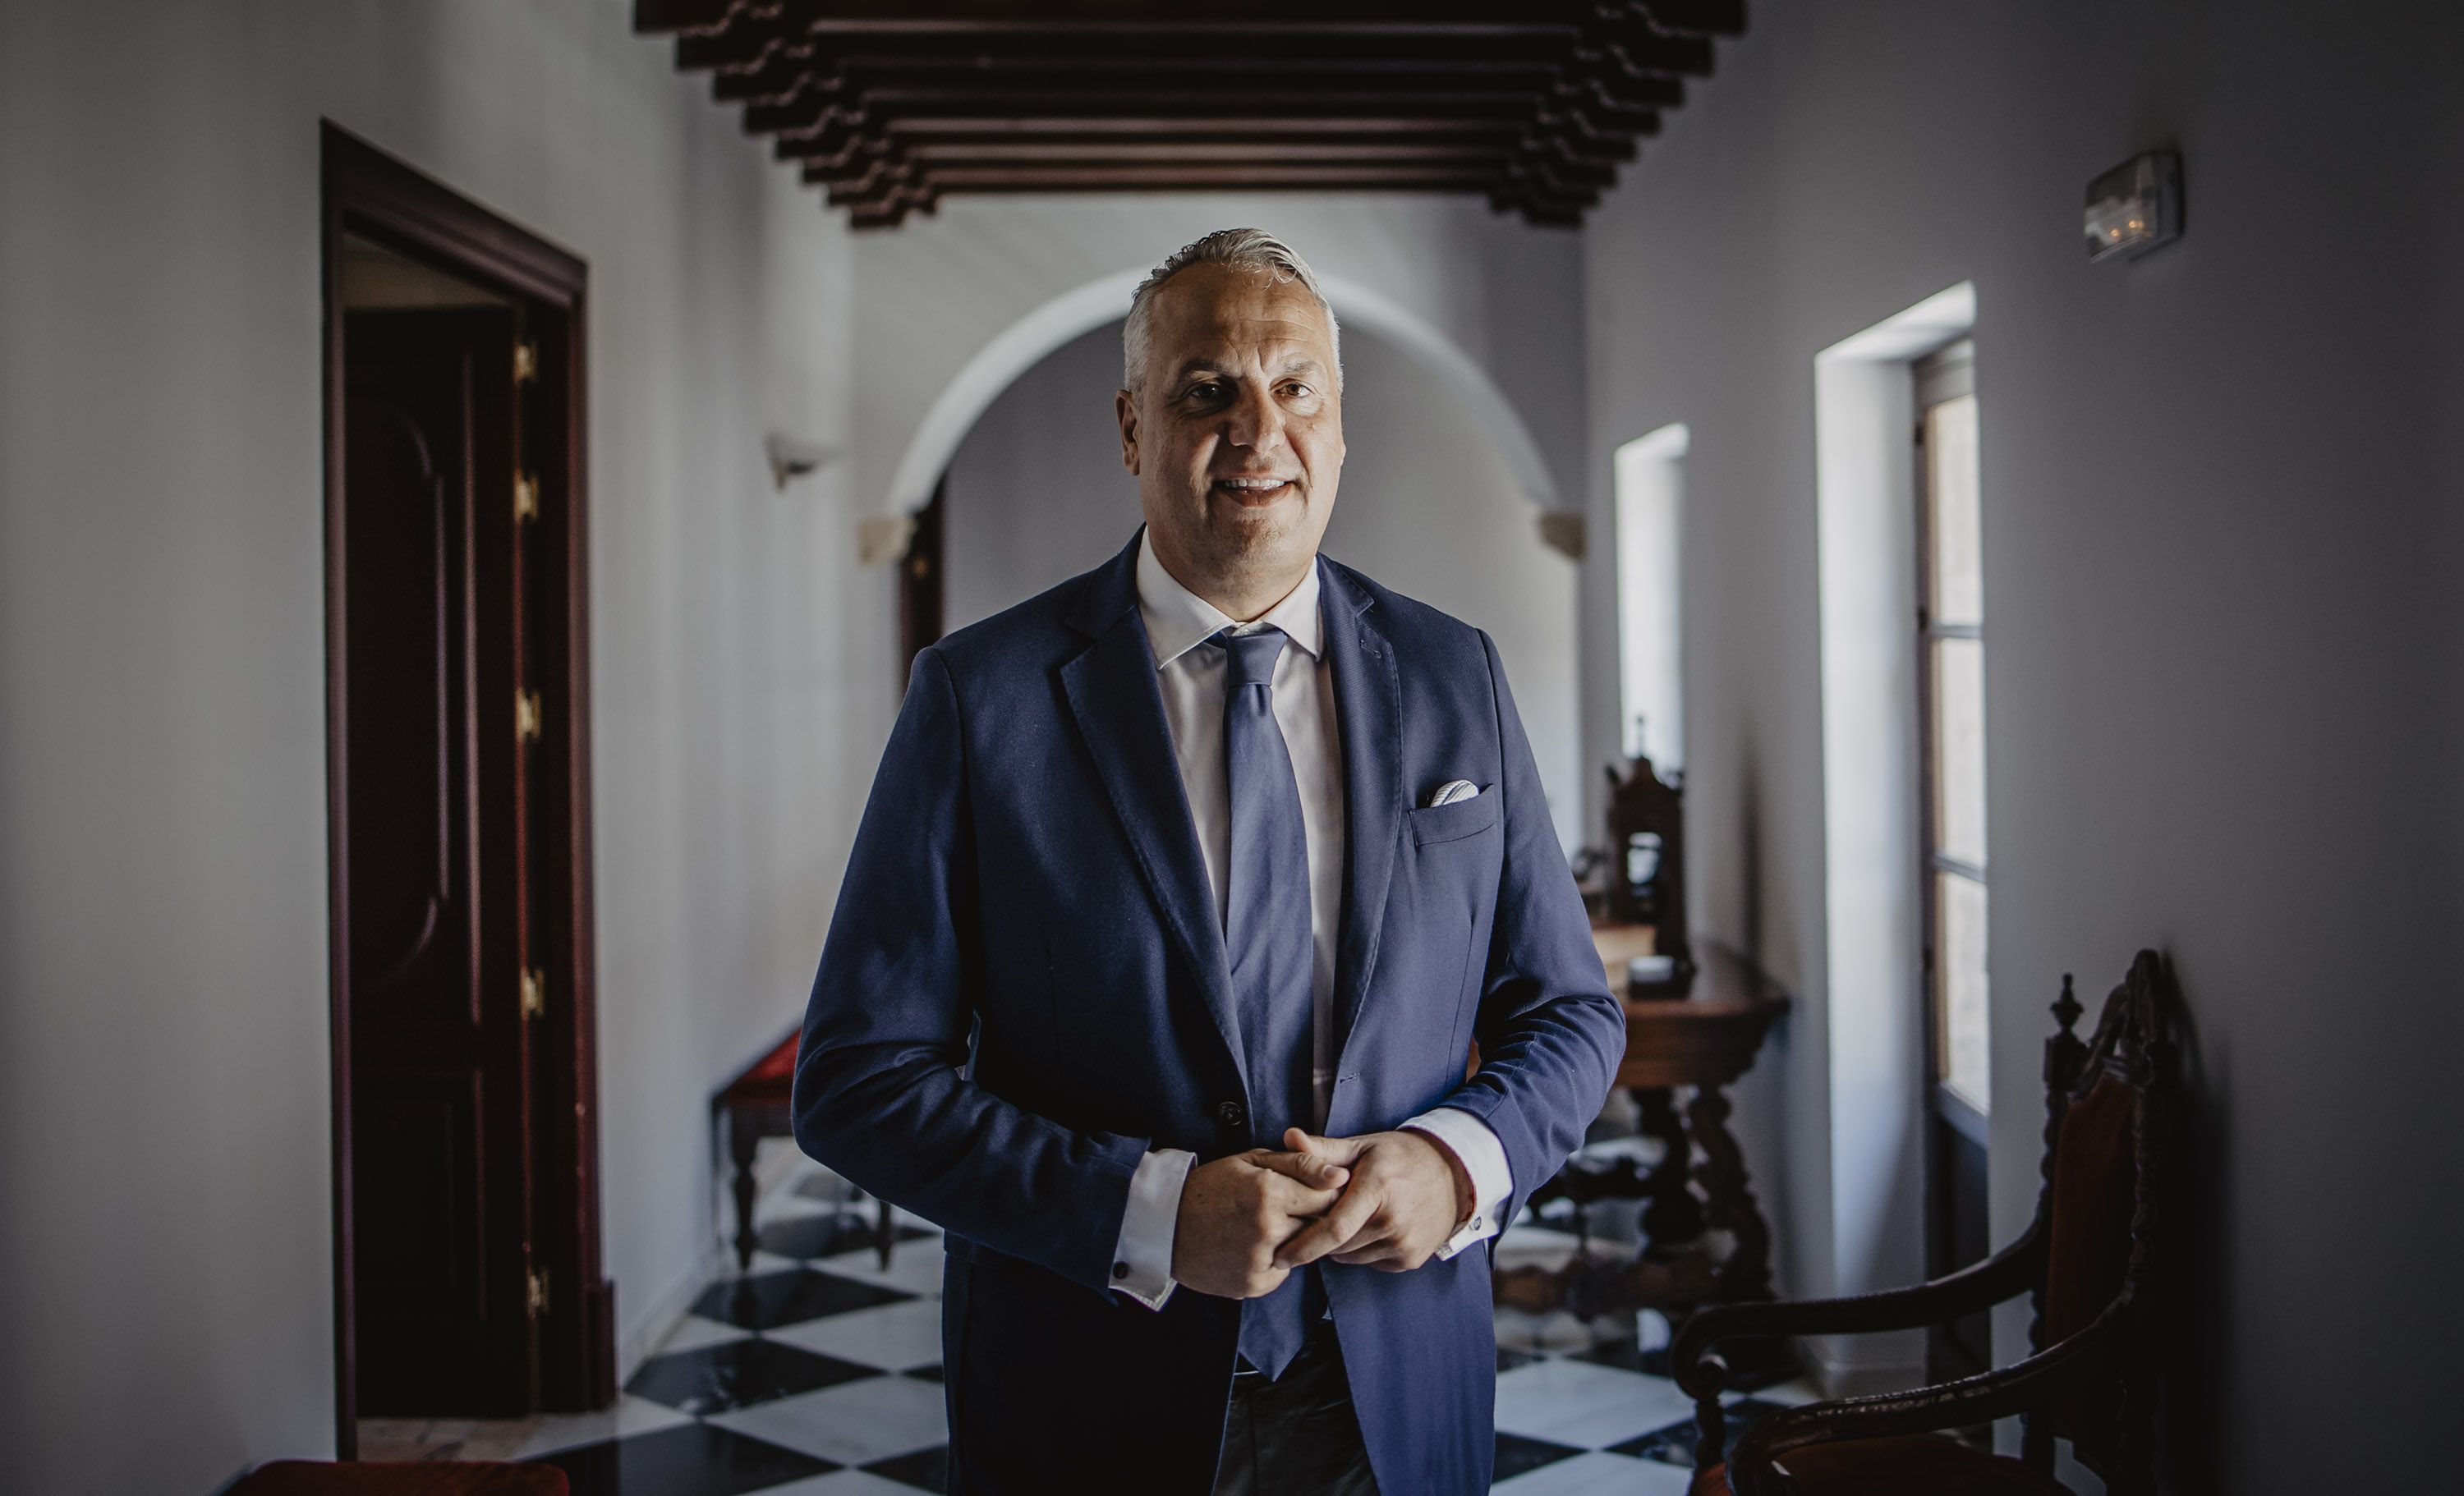 Juan Carlos Ruiz Boix, presidente de Diputación de Cádiz, tras la entrevista con lavozdelsur.es, esta semana en el transcurso de una visita a Jerez.